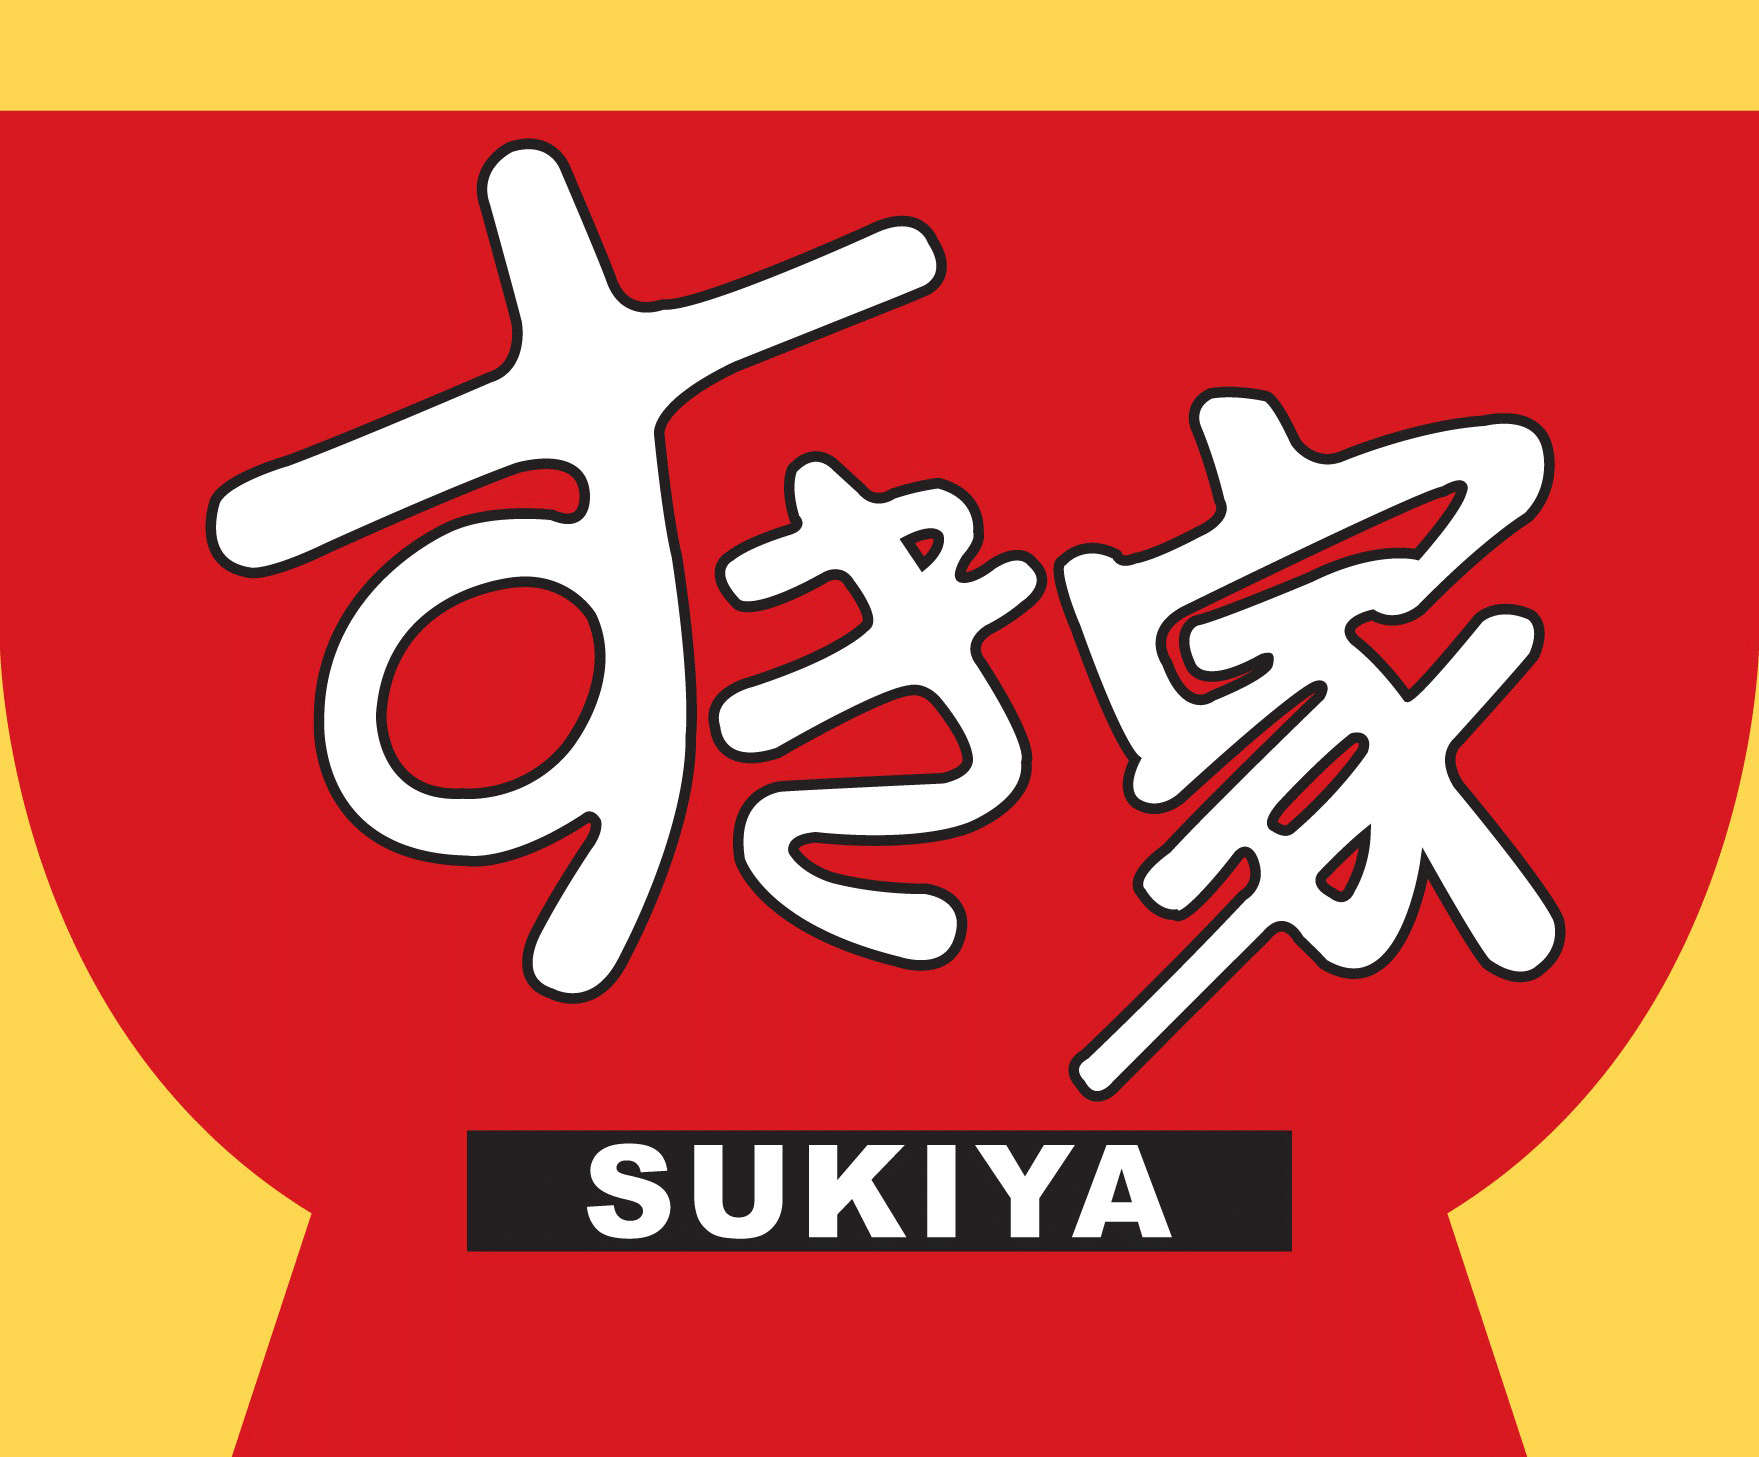 すき家 Sukiya ロゴマーク Logomark Mania 世界のかわいいロゴマーク集 企業ロゴ ブランドロゴ